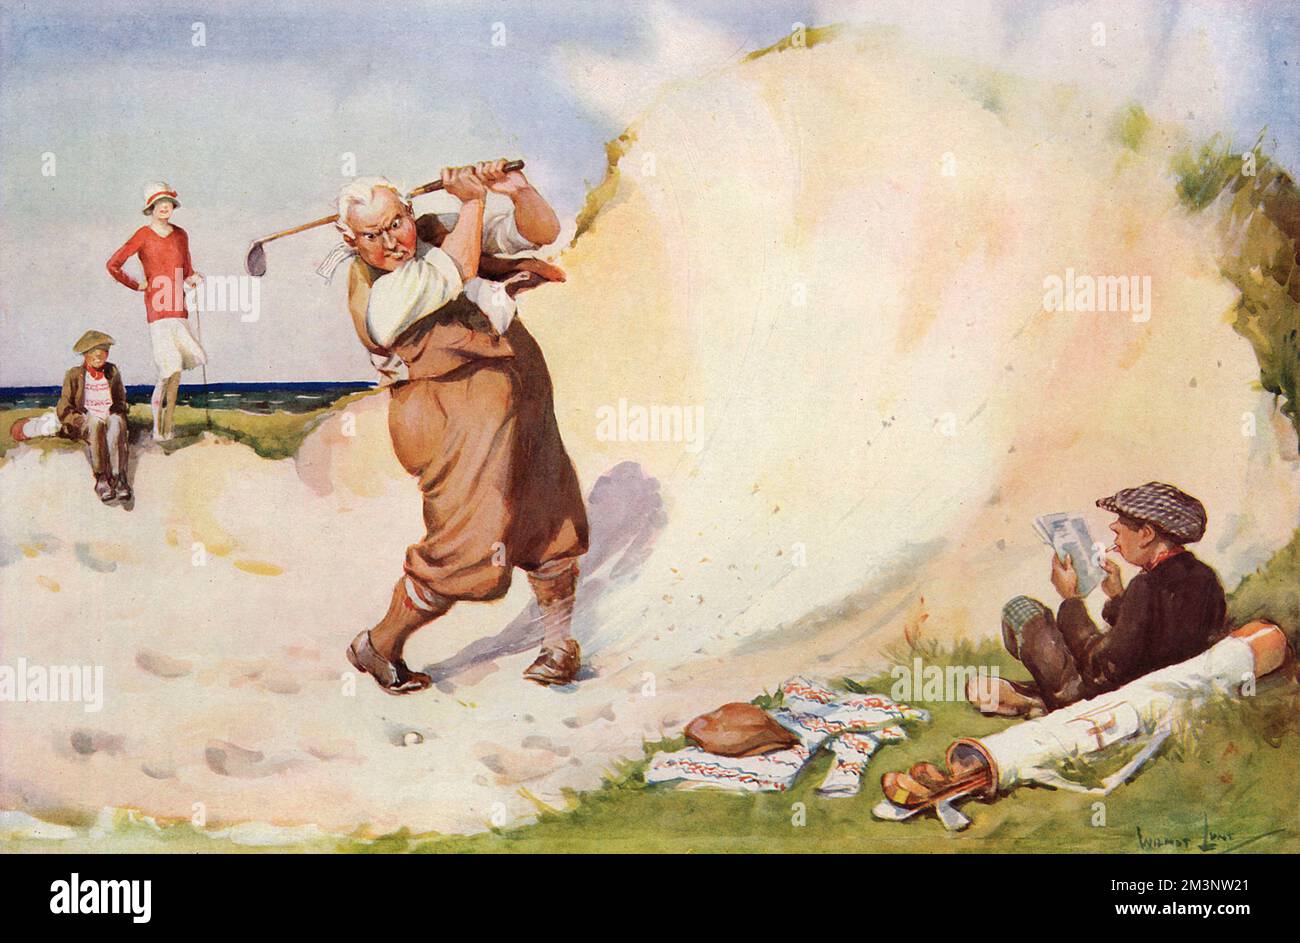 Ein junger Caddy ruht sich aus, während ein Golfer beharrlich (und mit zunehmender Wut) versucht, den Ball aus einem sandigen Bunker zu holen. Datum: 1927 Stockfoto